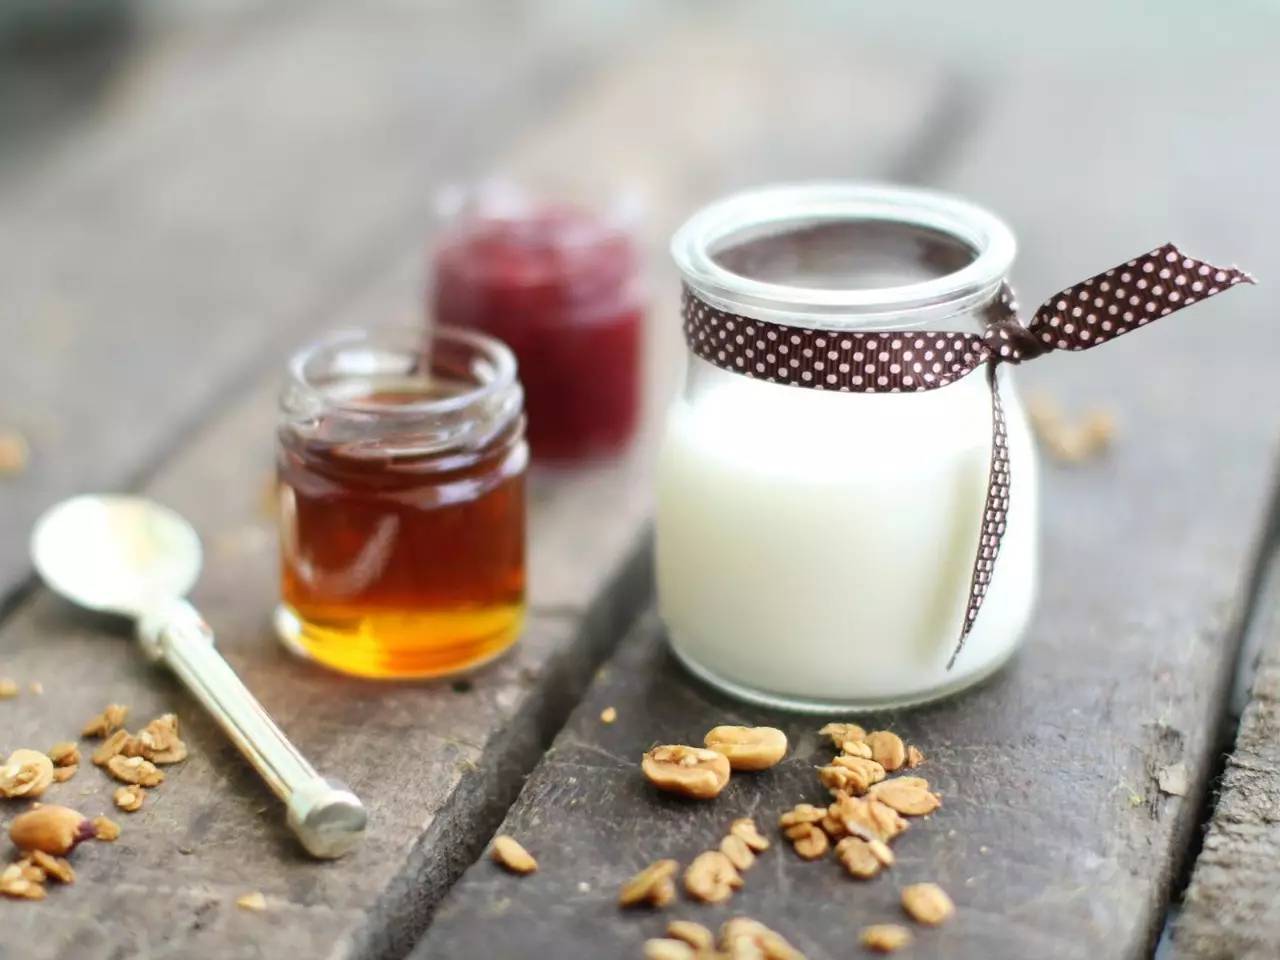 连巢带瓶的蜂蜜多少钱 饥荒蜂蜜炸弹 塔斯马尼亚田园蜂蜜 蜂蜜忌与什么同食 蜂蜜维生素e面膜功效